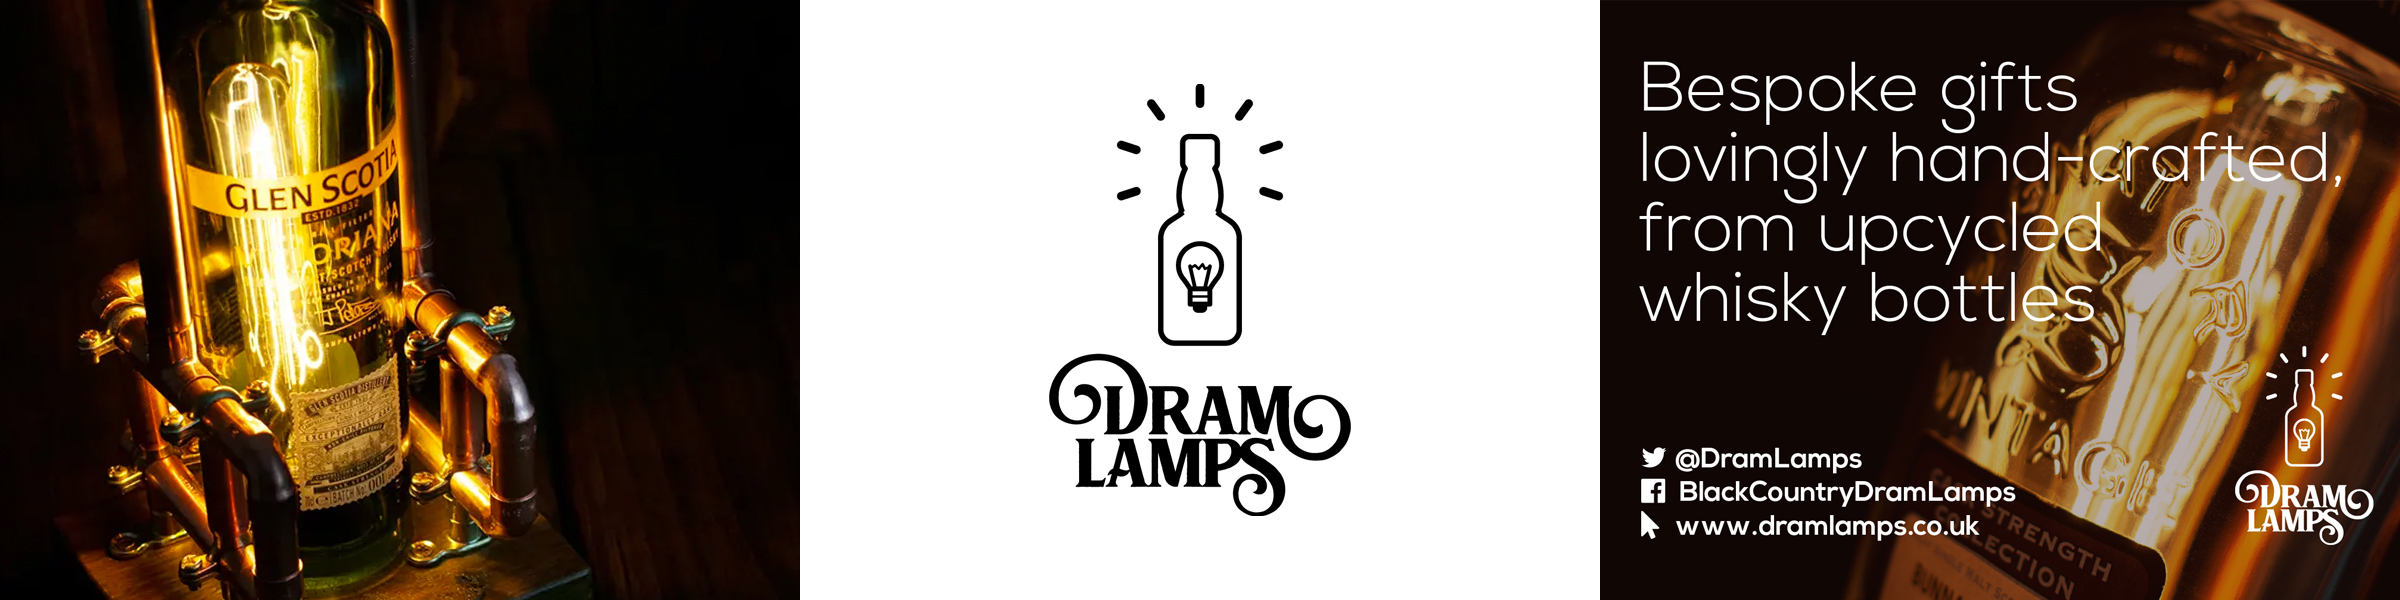 Dramlamps